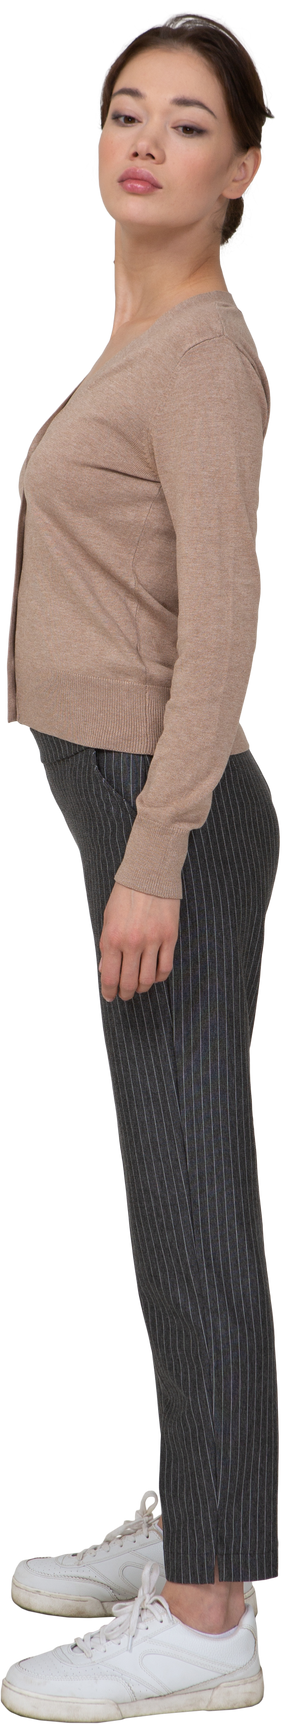 Vista lateral de una señorita en jersey y pantalones girando la cabeza